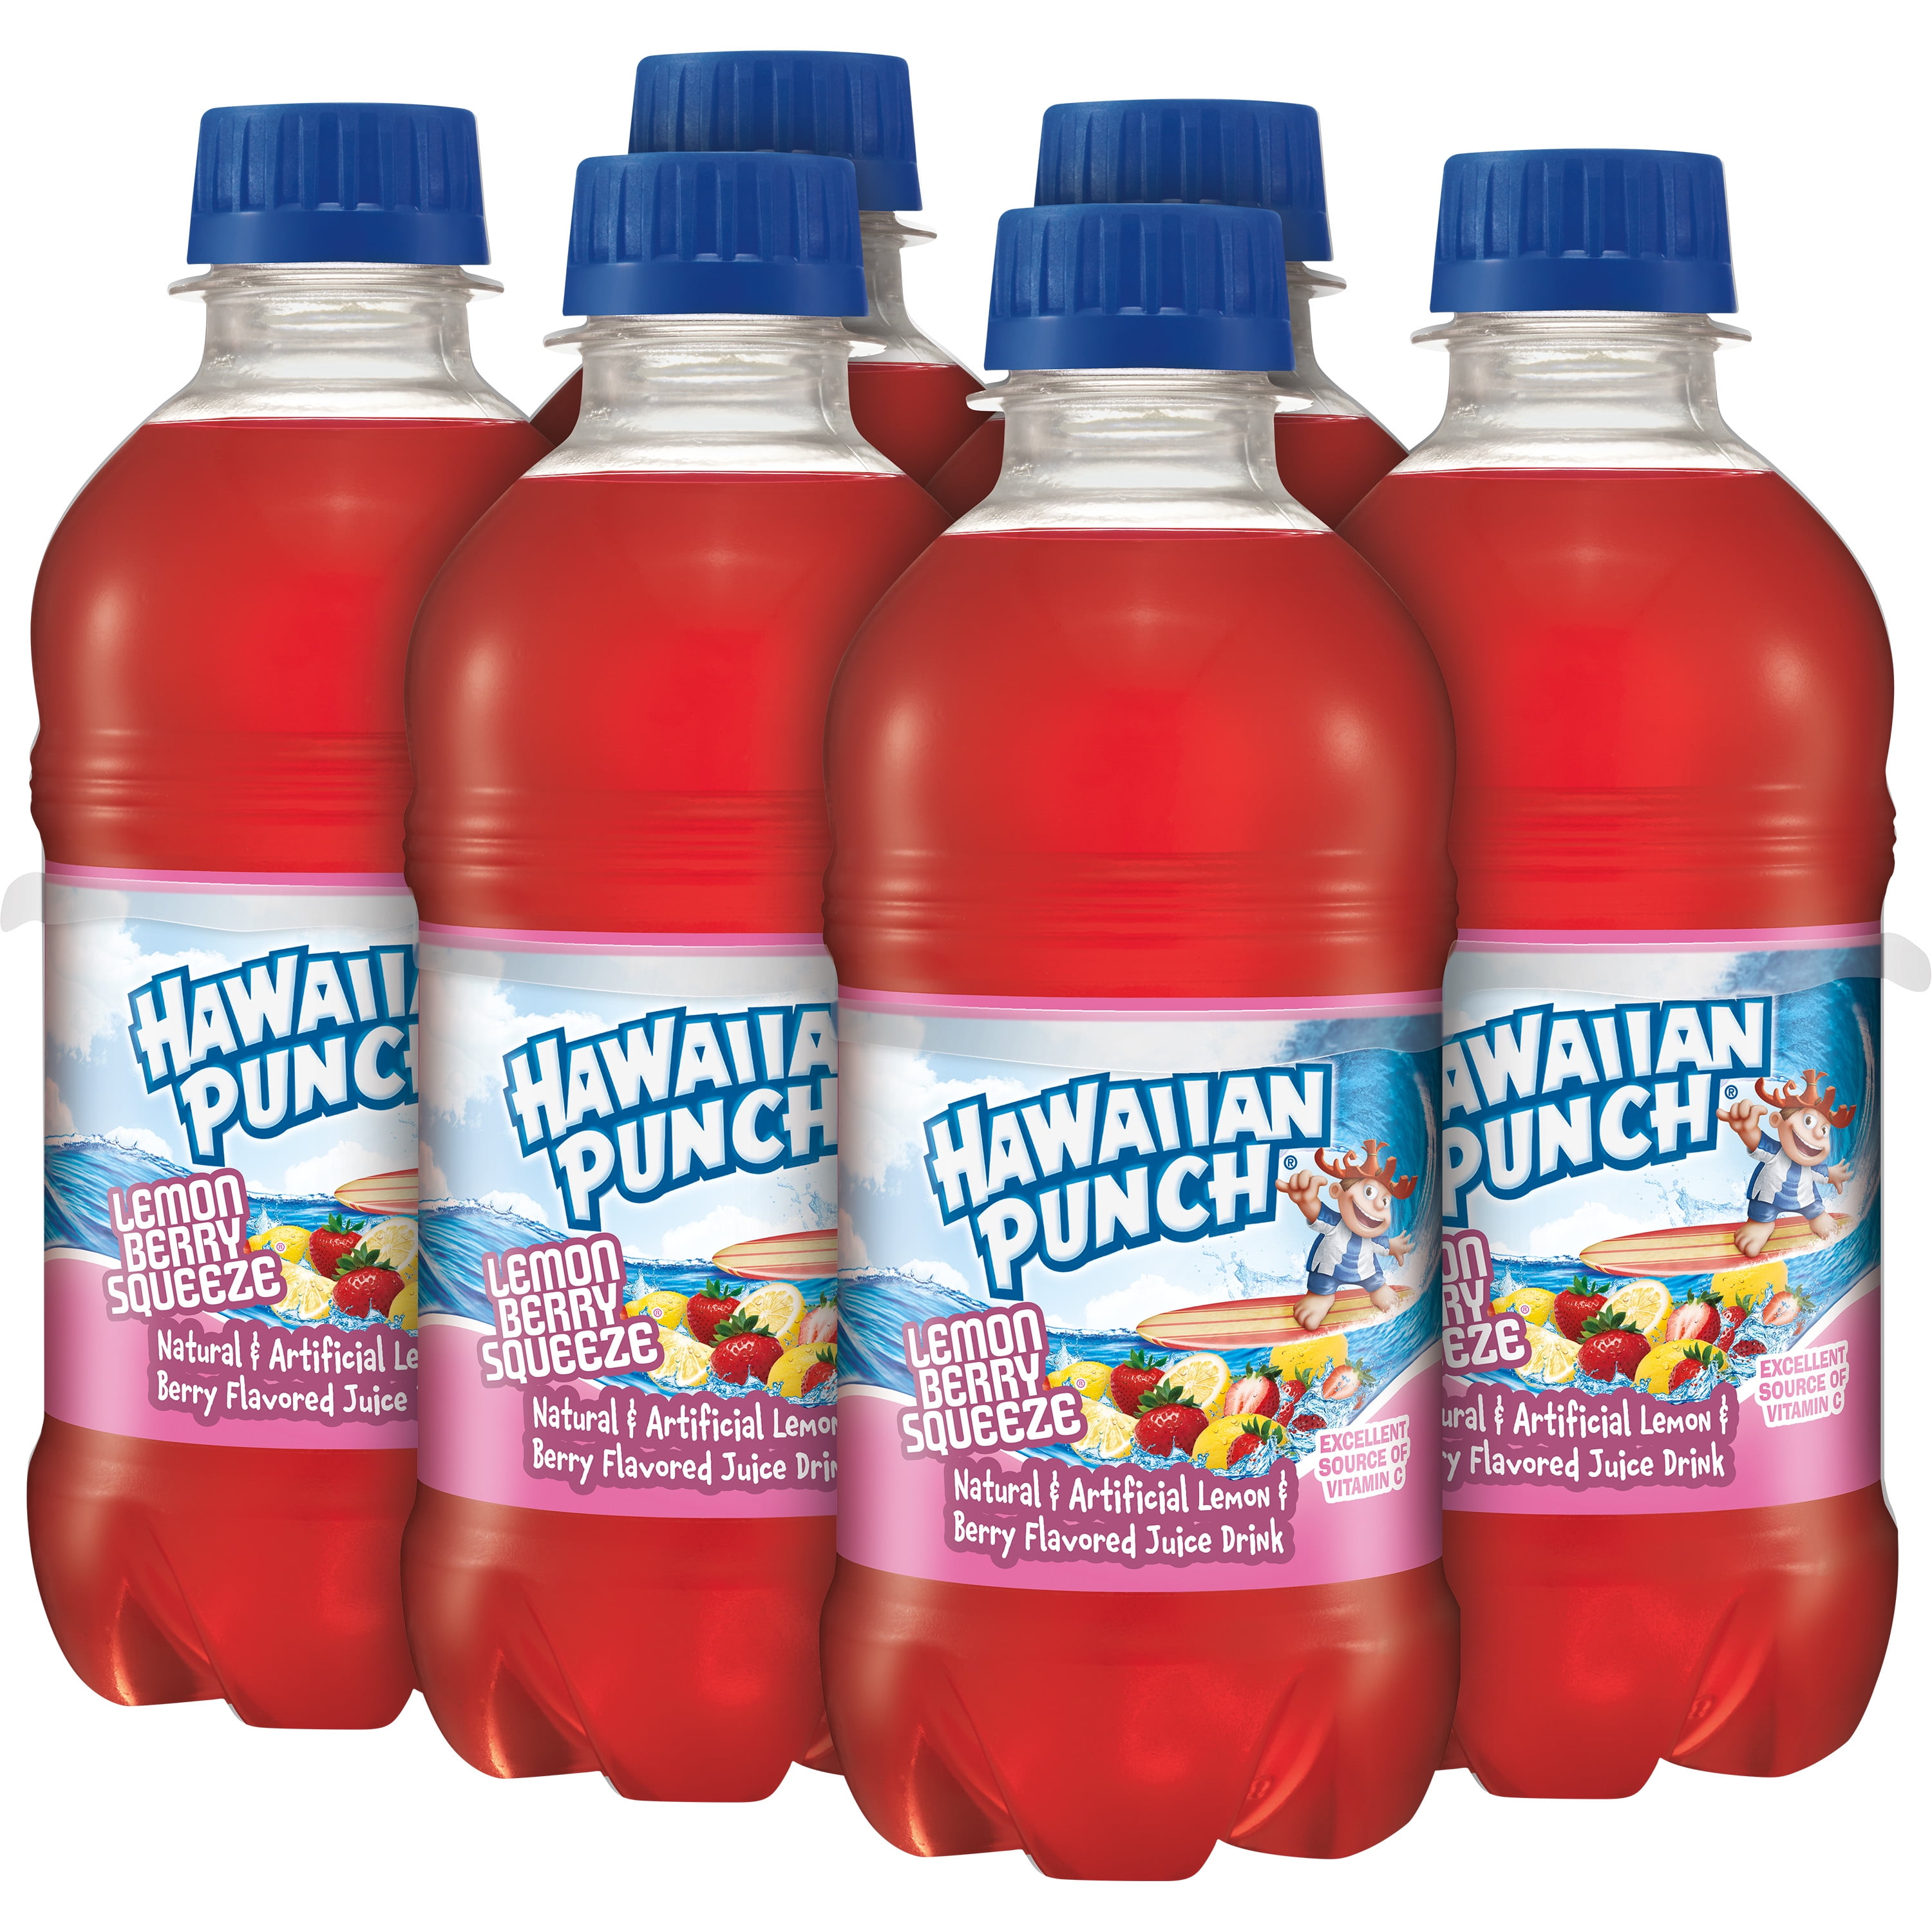 Hawaiian Punch® Lemon Berry Squeeze Juice Drink, 1 gal - Foods Co.